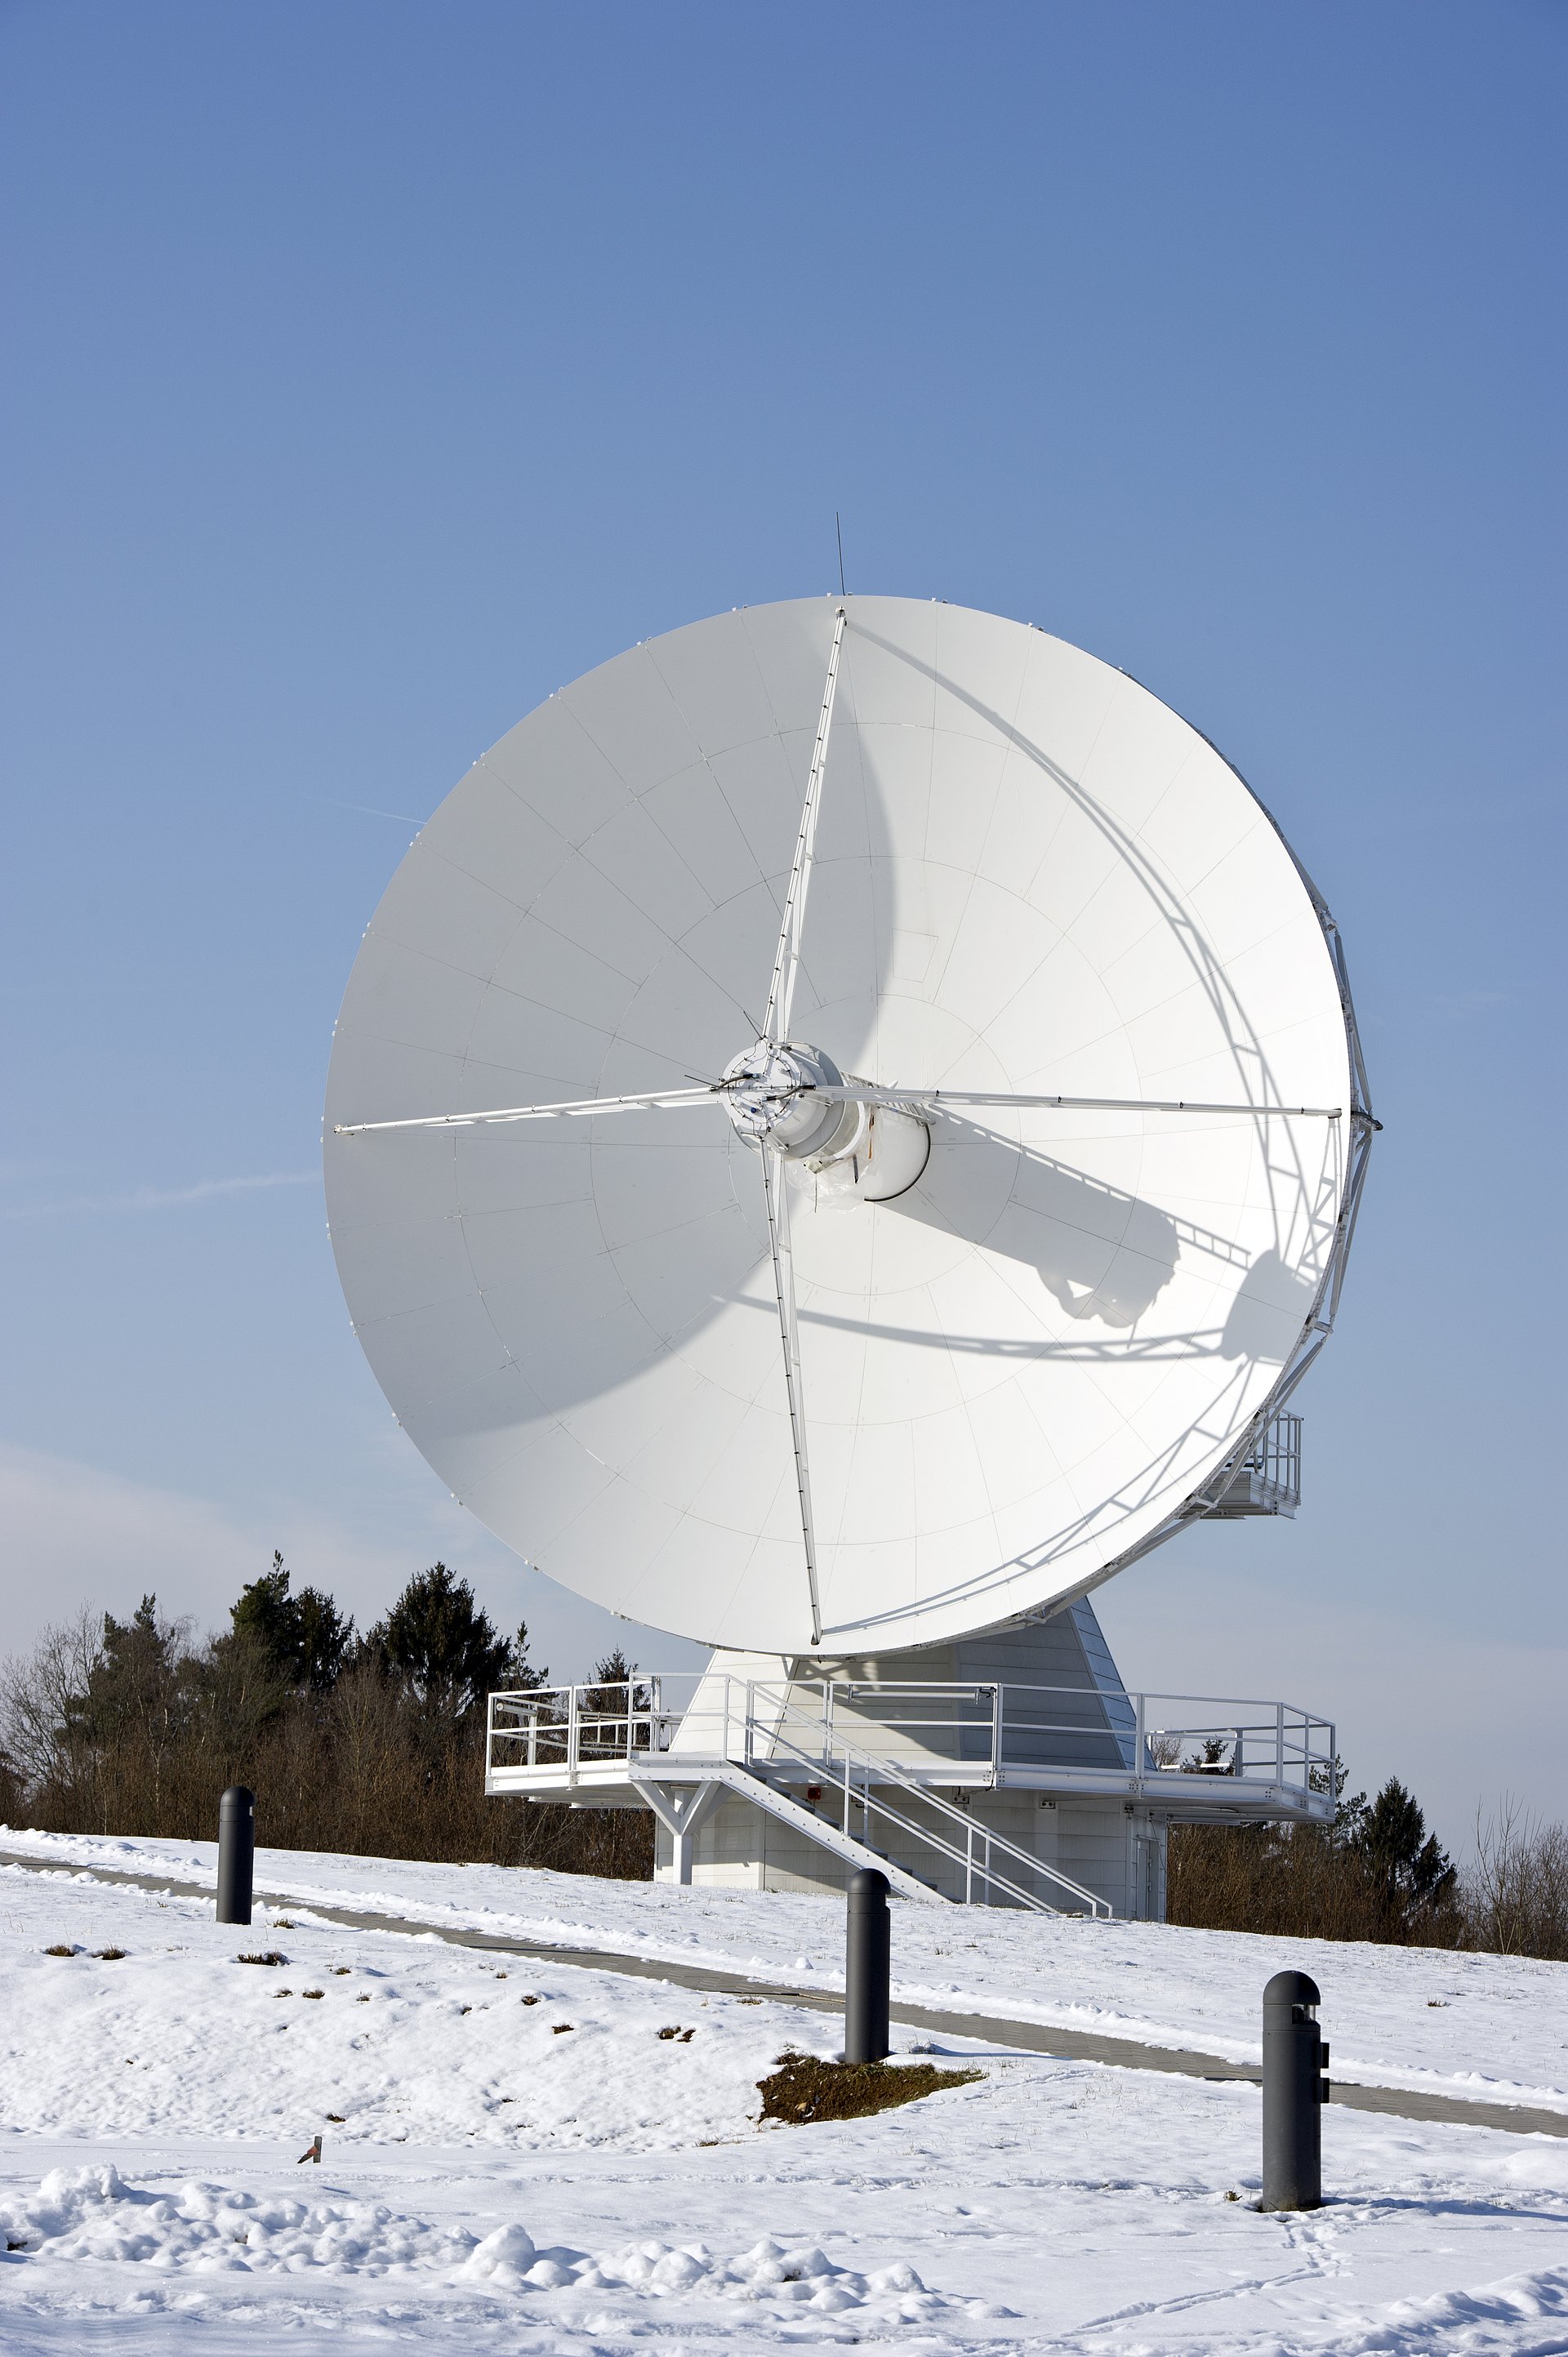 Radioteleskop des Geodätischen Observatoriums Wettzell